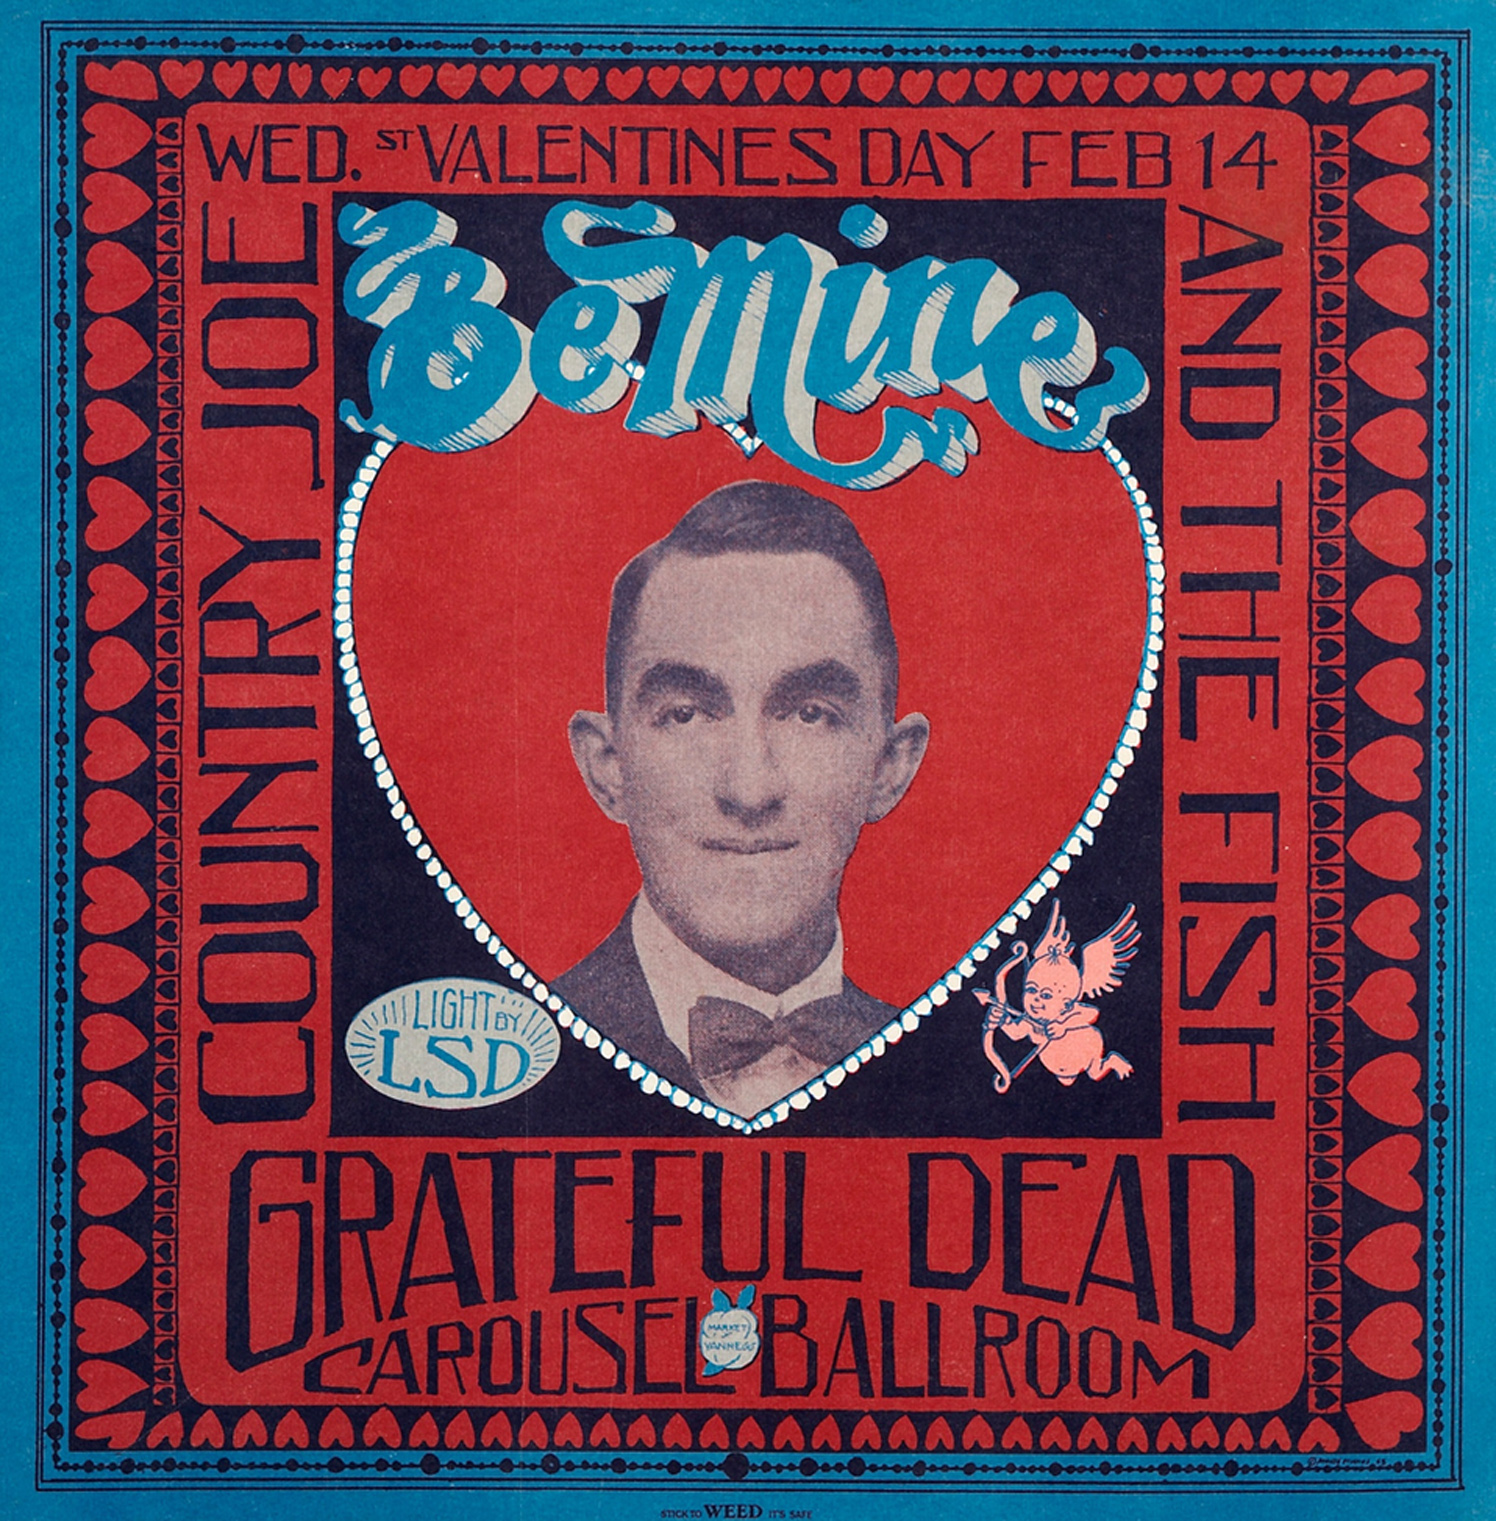 Grateful Dead 1968 (2)